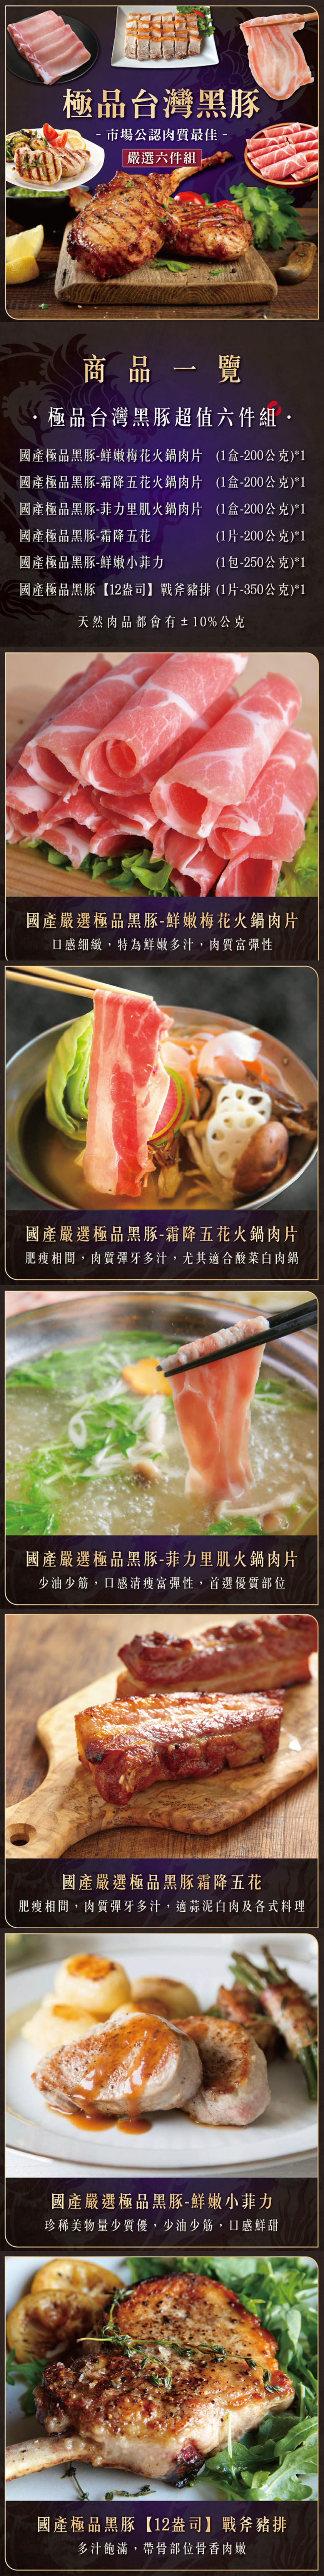 【欣明生鮮】極品台灣黑豚火鍋排餐超值6件組